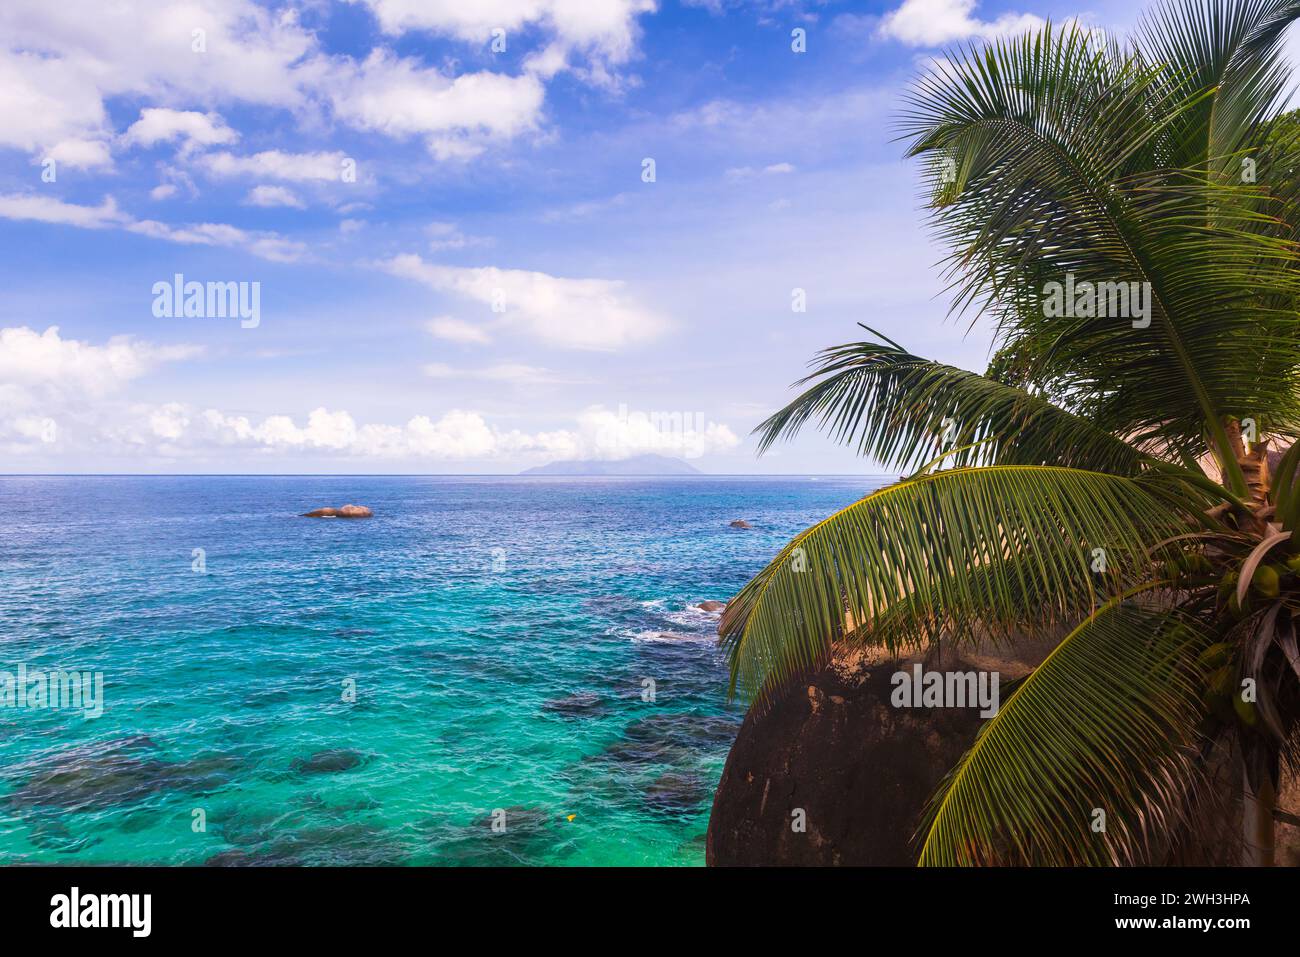 Vista costiera della spiaggia Vista do Mar dell'isola di Mahe, delle Seychelles, delle palme e dell'acqua blu dell'oceano sotto il cielo nuvoloso in un giorno d'estate Foto Stock